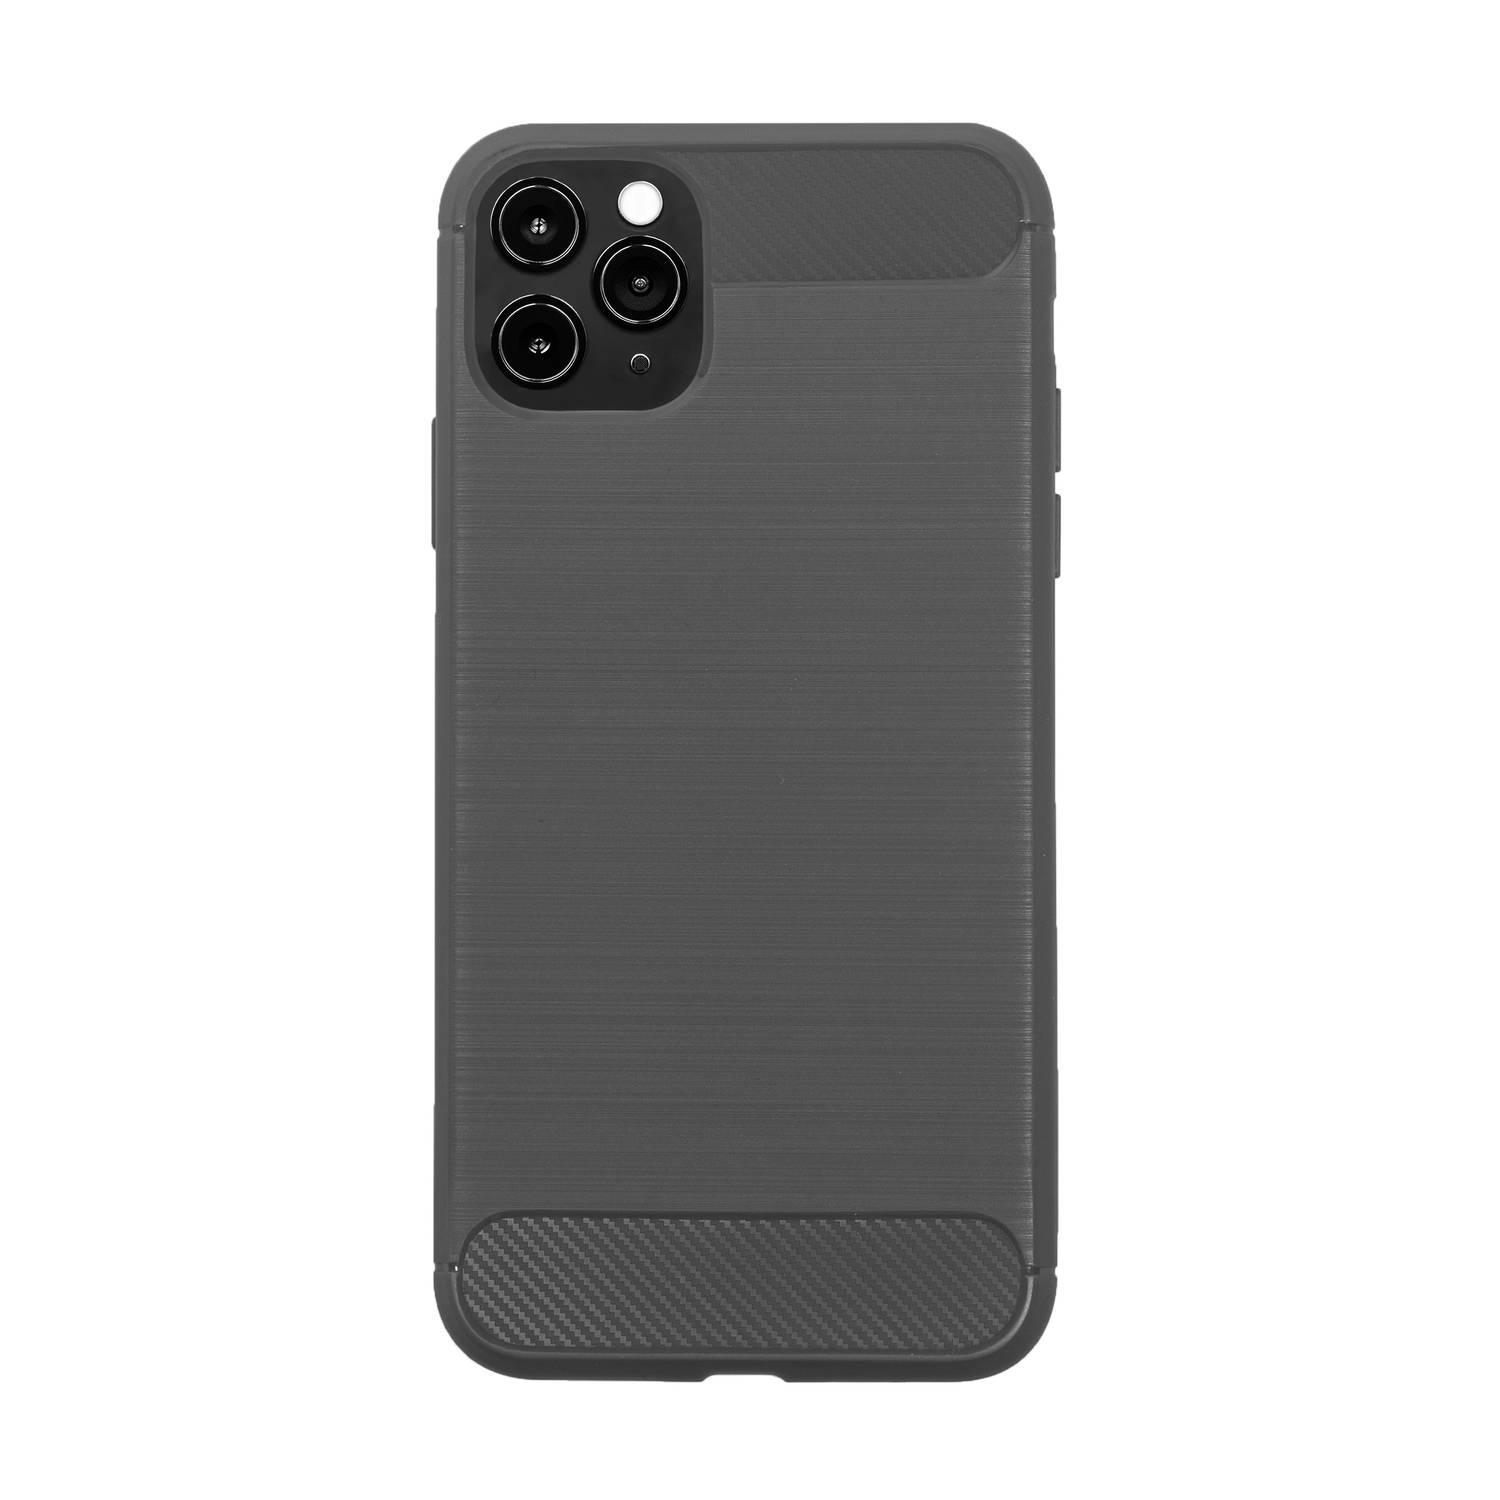 Bmax Carbon Soft Case Hoesje Voor Iphone 11 Pro - Grey/grijs